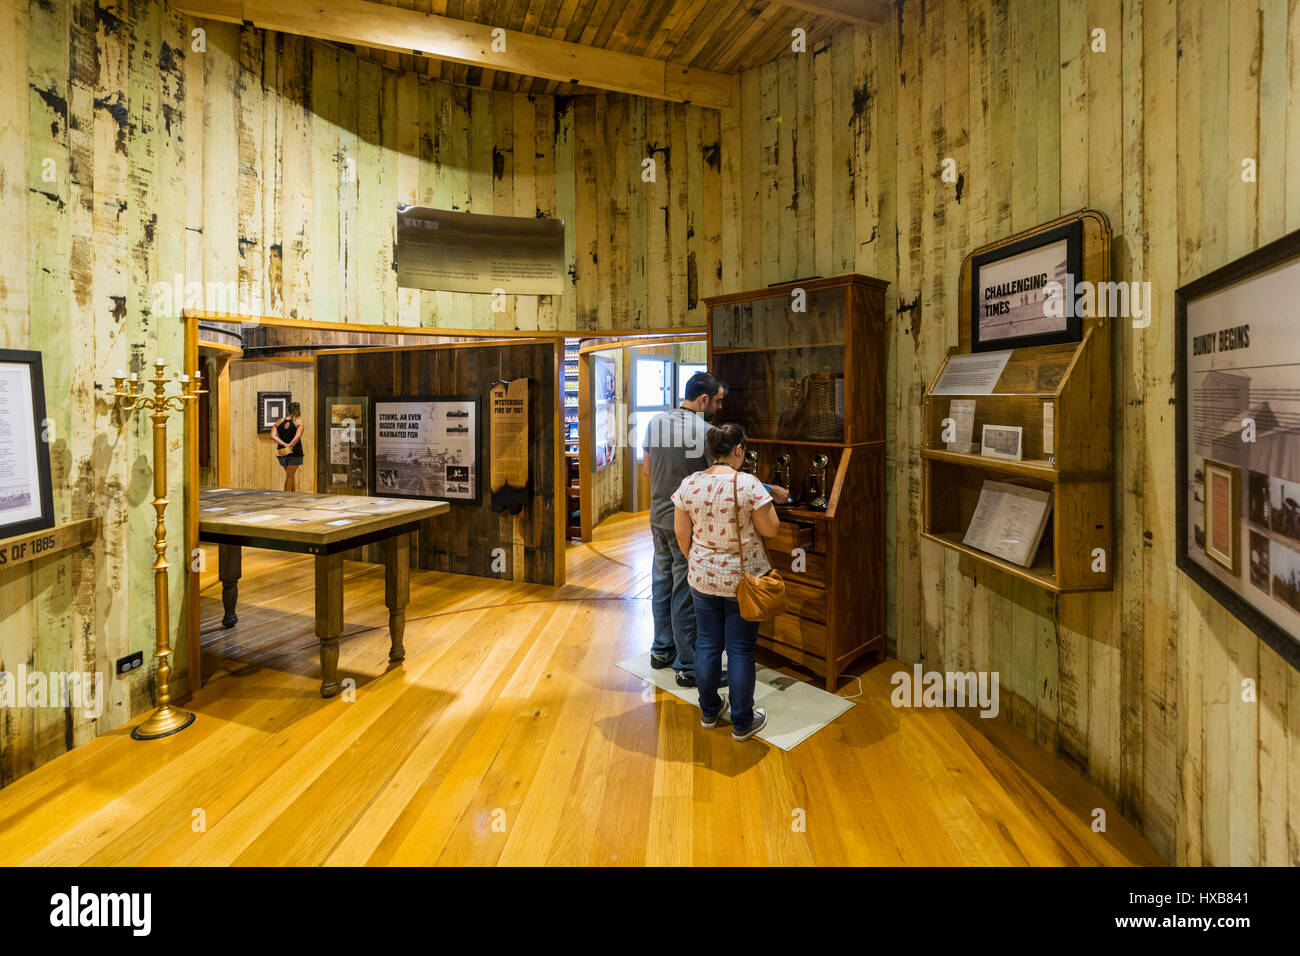 Les visiteurs découvrant l'histoire de Bundaberg Rum dans l'expérience du musée. Bundaberg, Queensland, Australie Banque D'Images